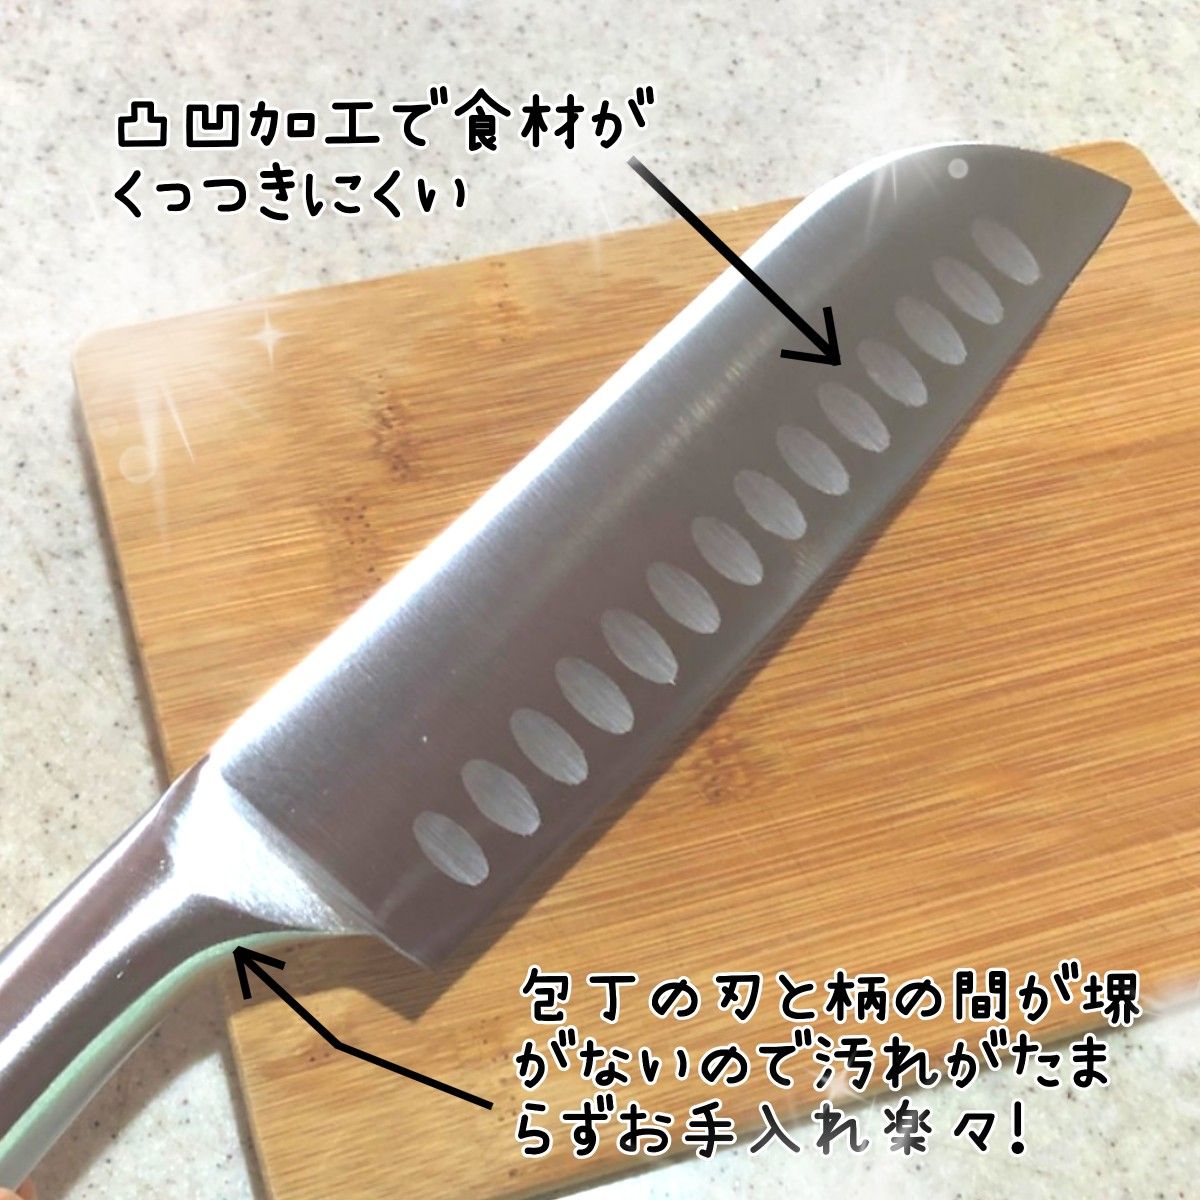 テンレス包丁 ナイフ キッチン用品 調理器具新品未使用 送料無料